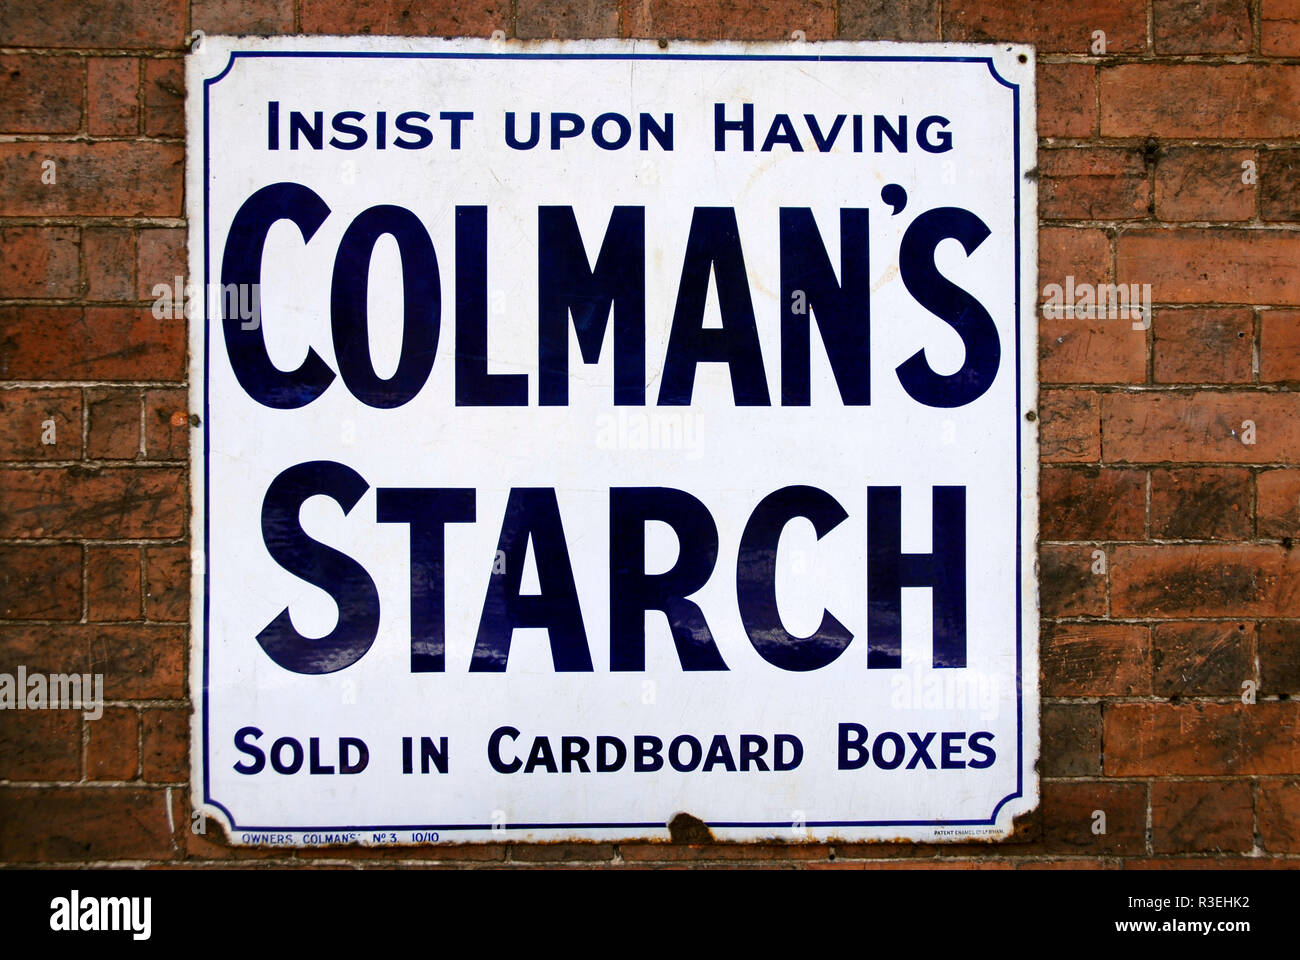 Metallo vecchio pannello pubblicitario per Colman's amido, avvitato ad un muro di mattoni Foto Stock